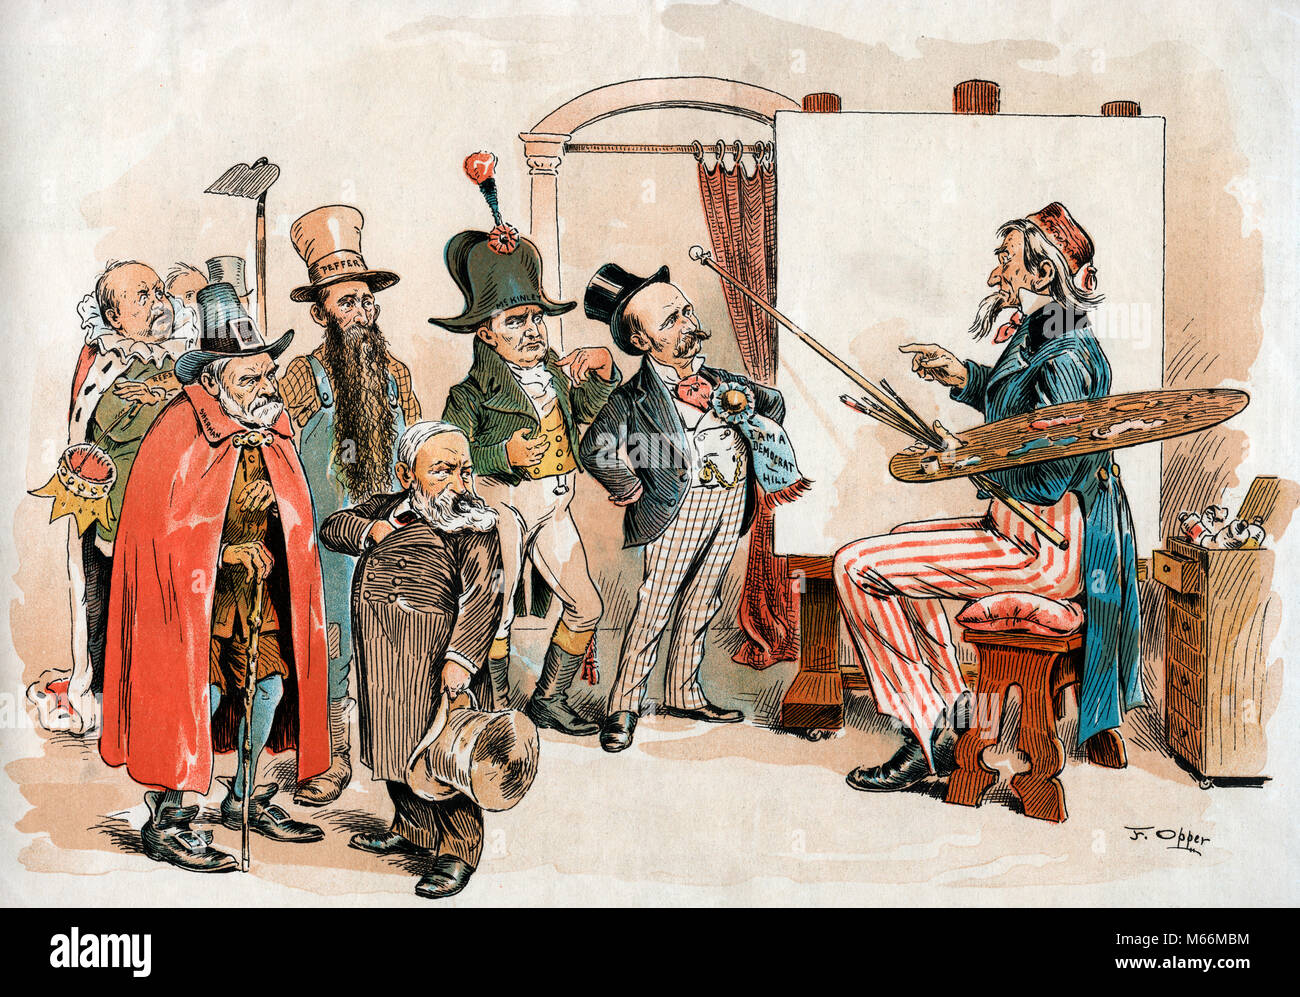 1896 dibujos animados de Puck por F. OPPER Tío Sam como pintor SELECCIONANDO EL MODELO DE CANDIDATOS PRESIDENCIALES McKINLEY - kh13263 CPC001 HARS WILLIAM MCKINLEY Foto de stock